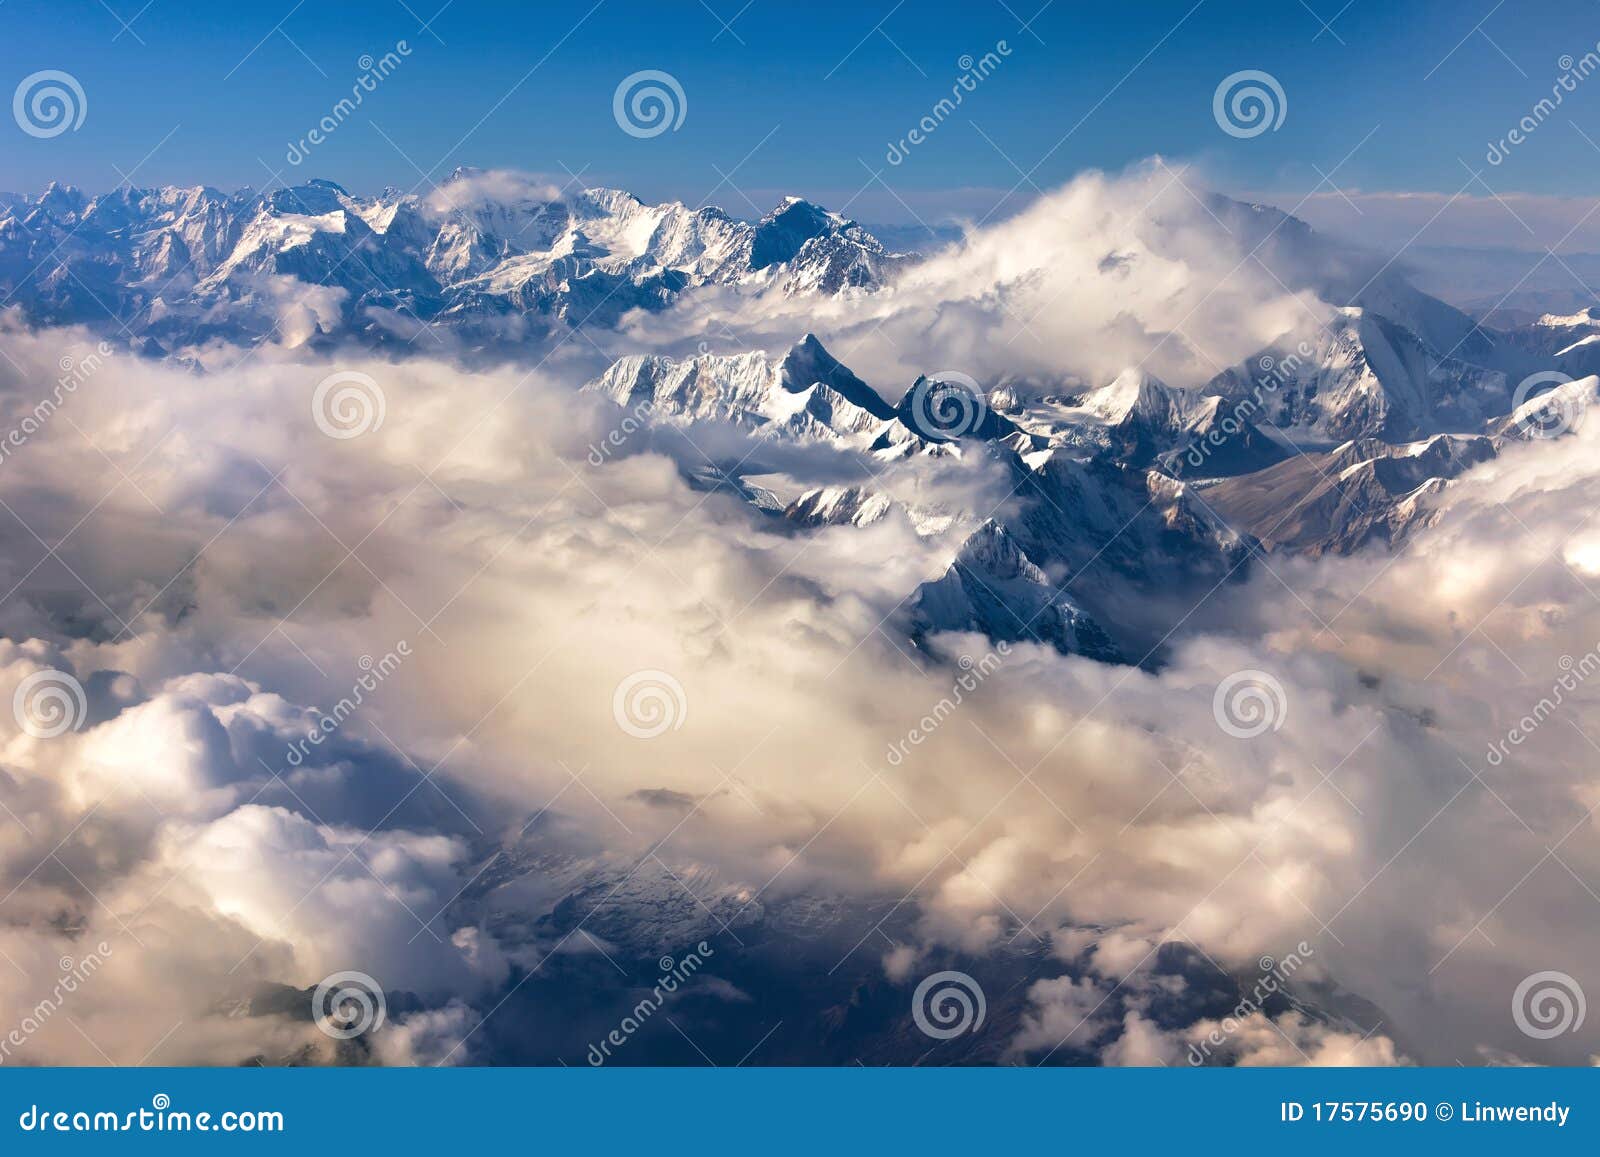 himalaya mountain- nepal